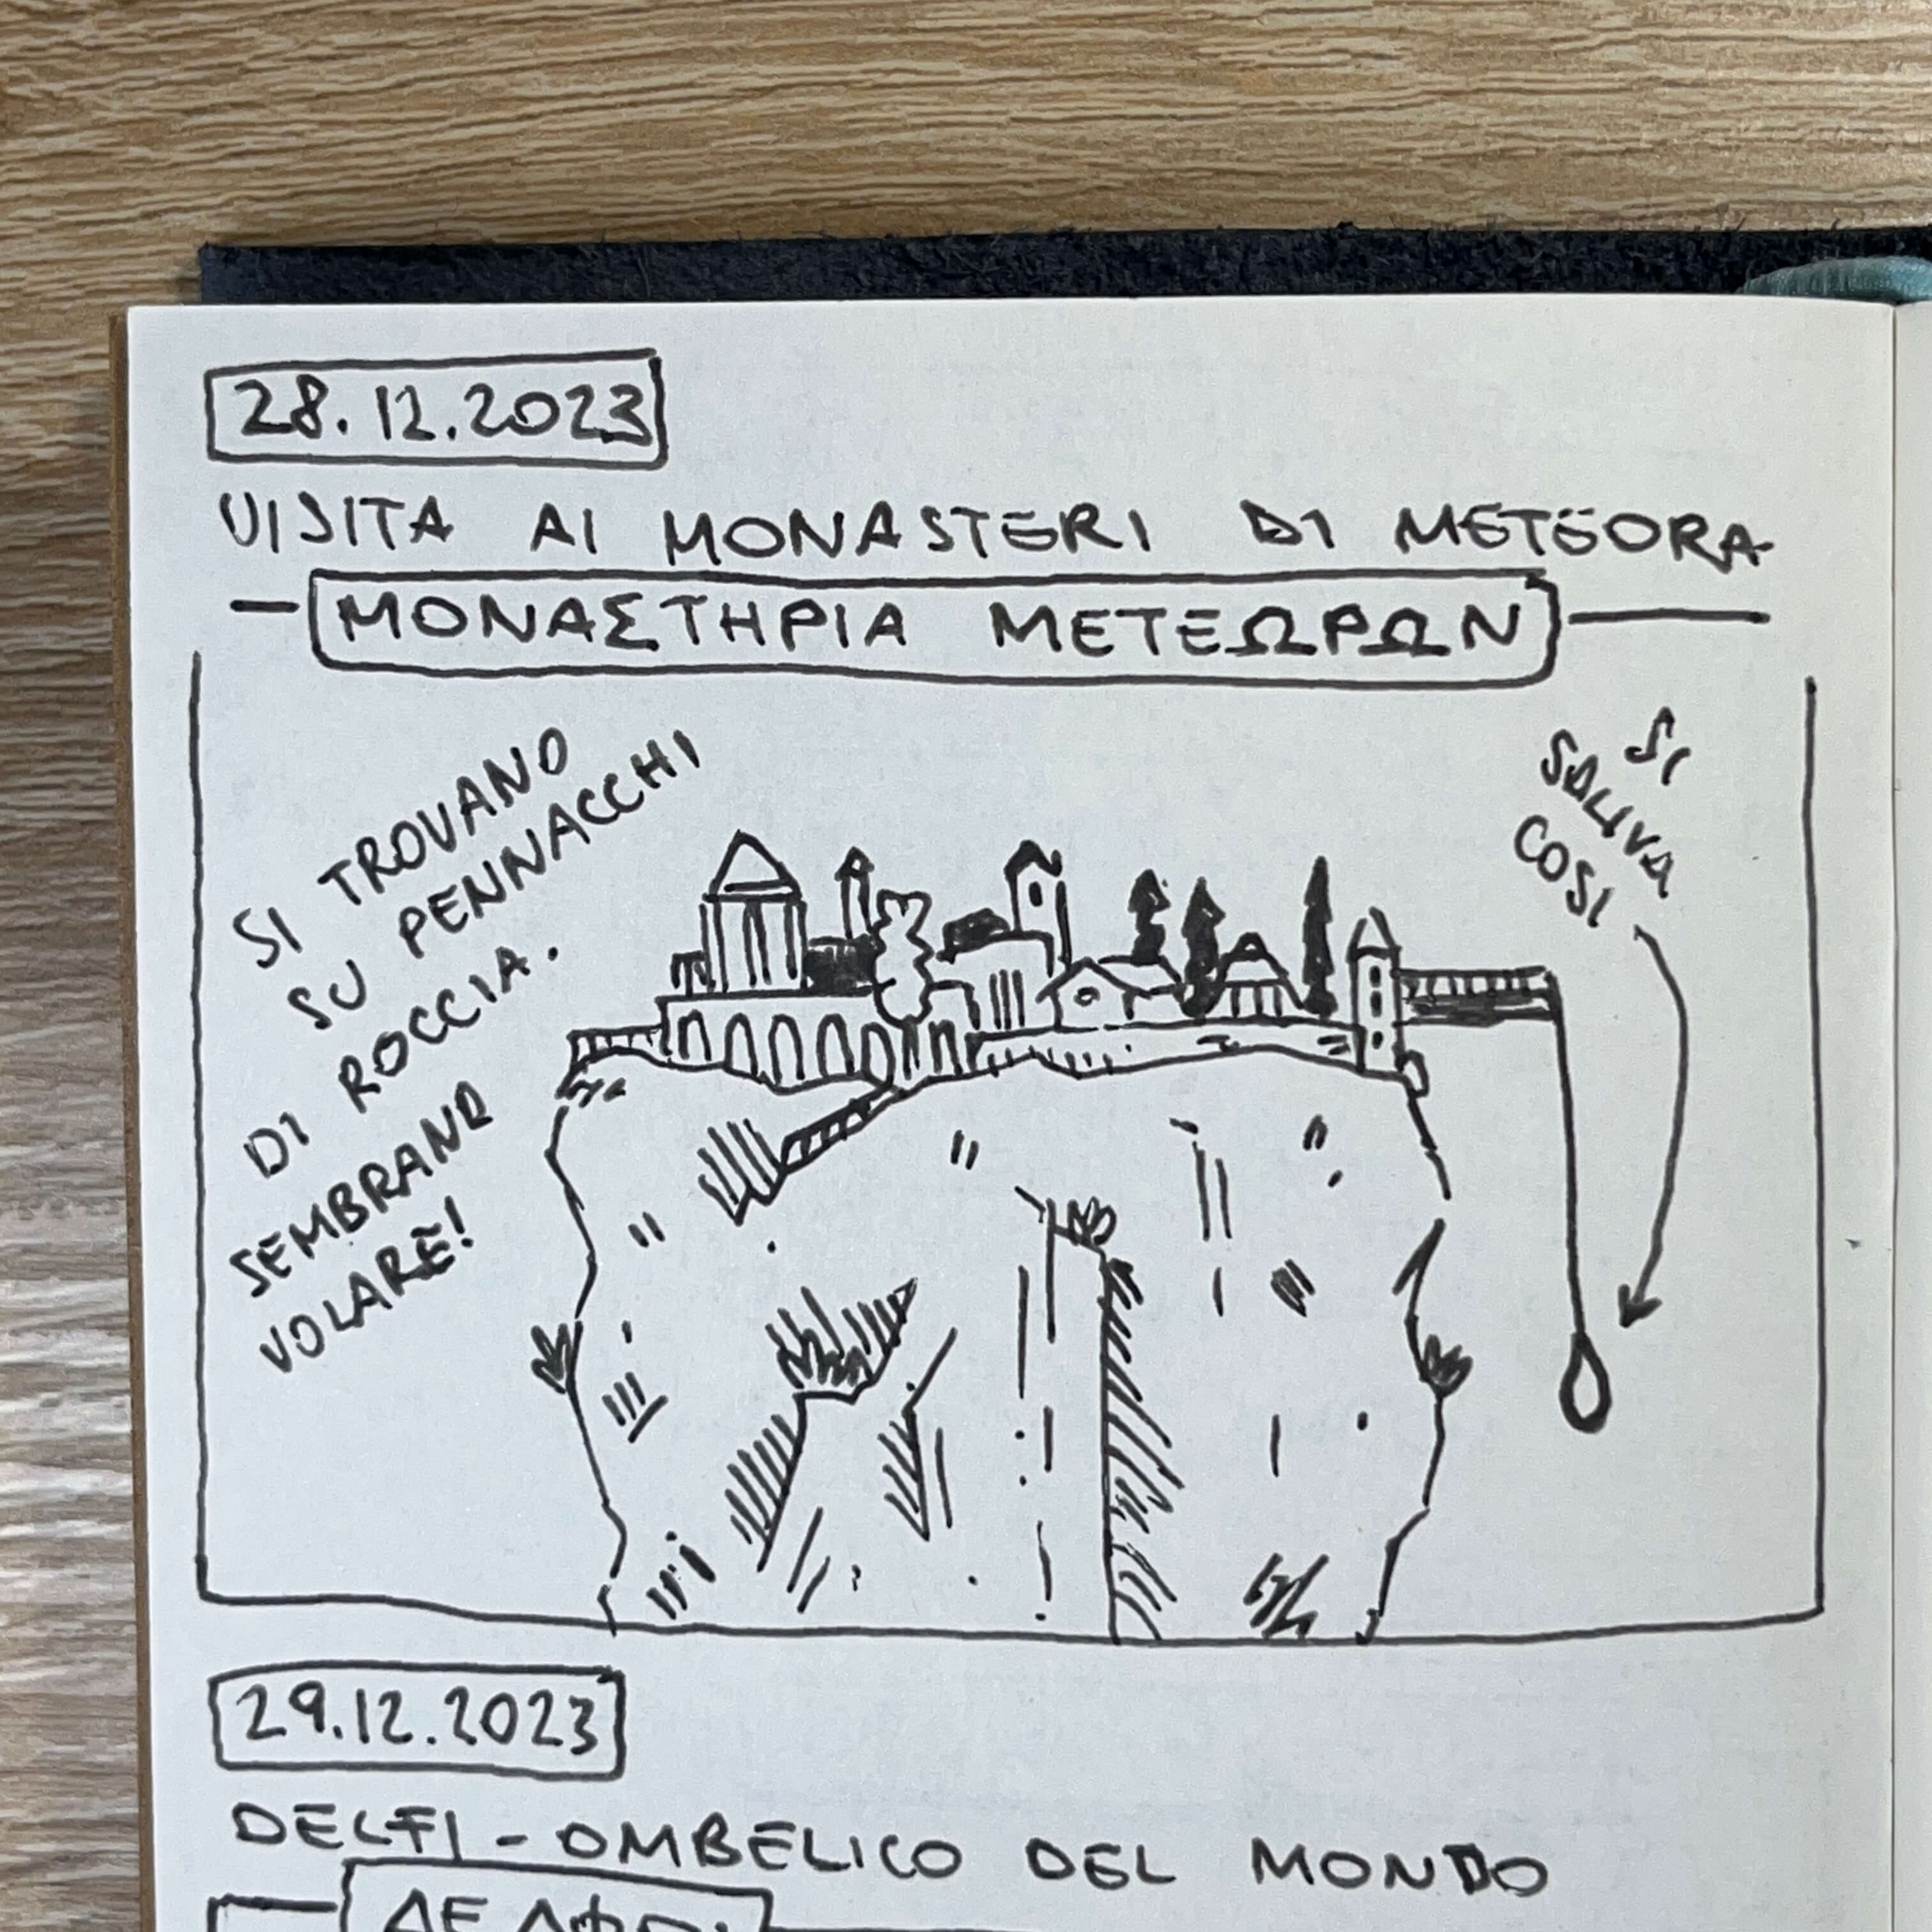 Monasteri di Meteora